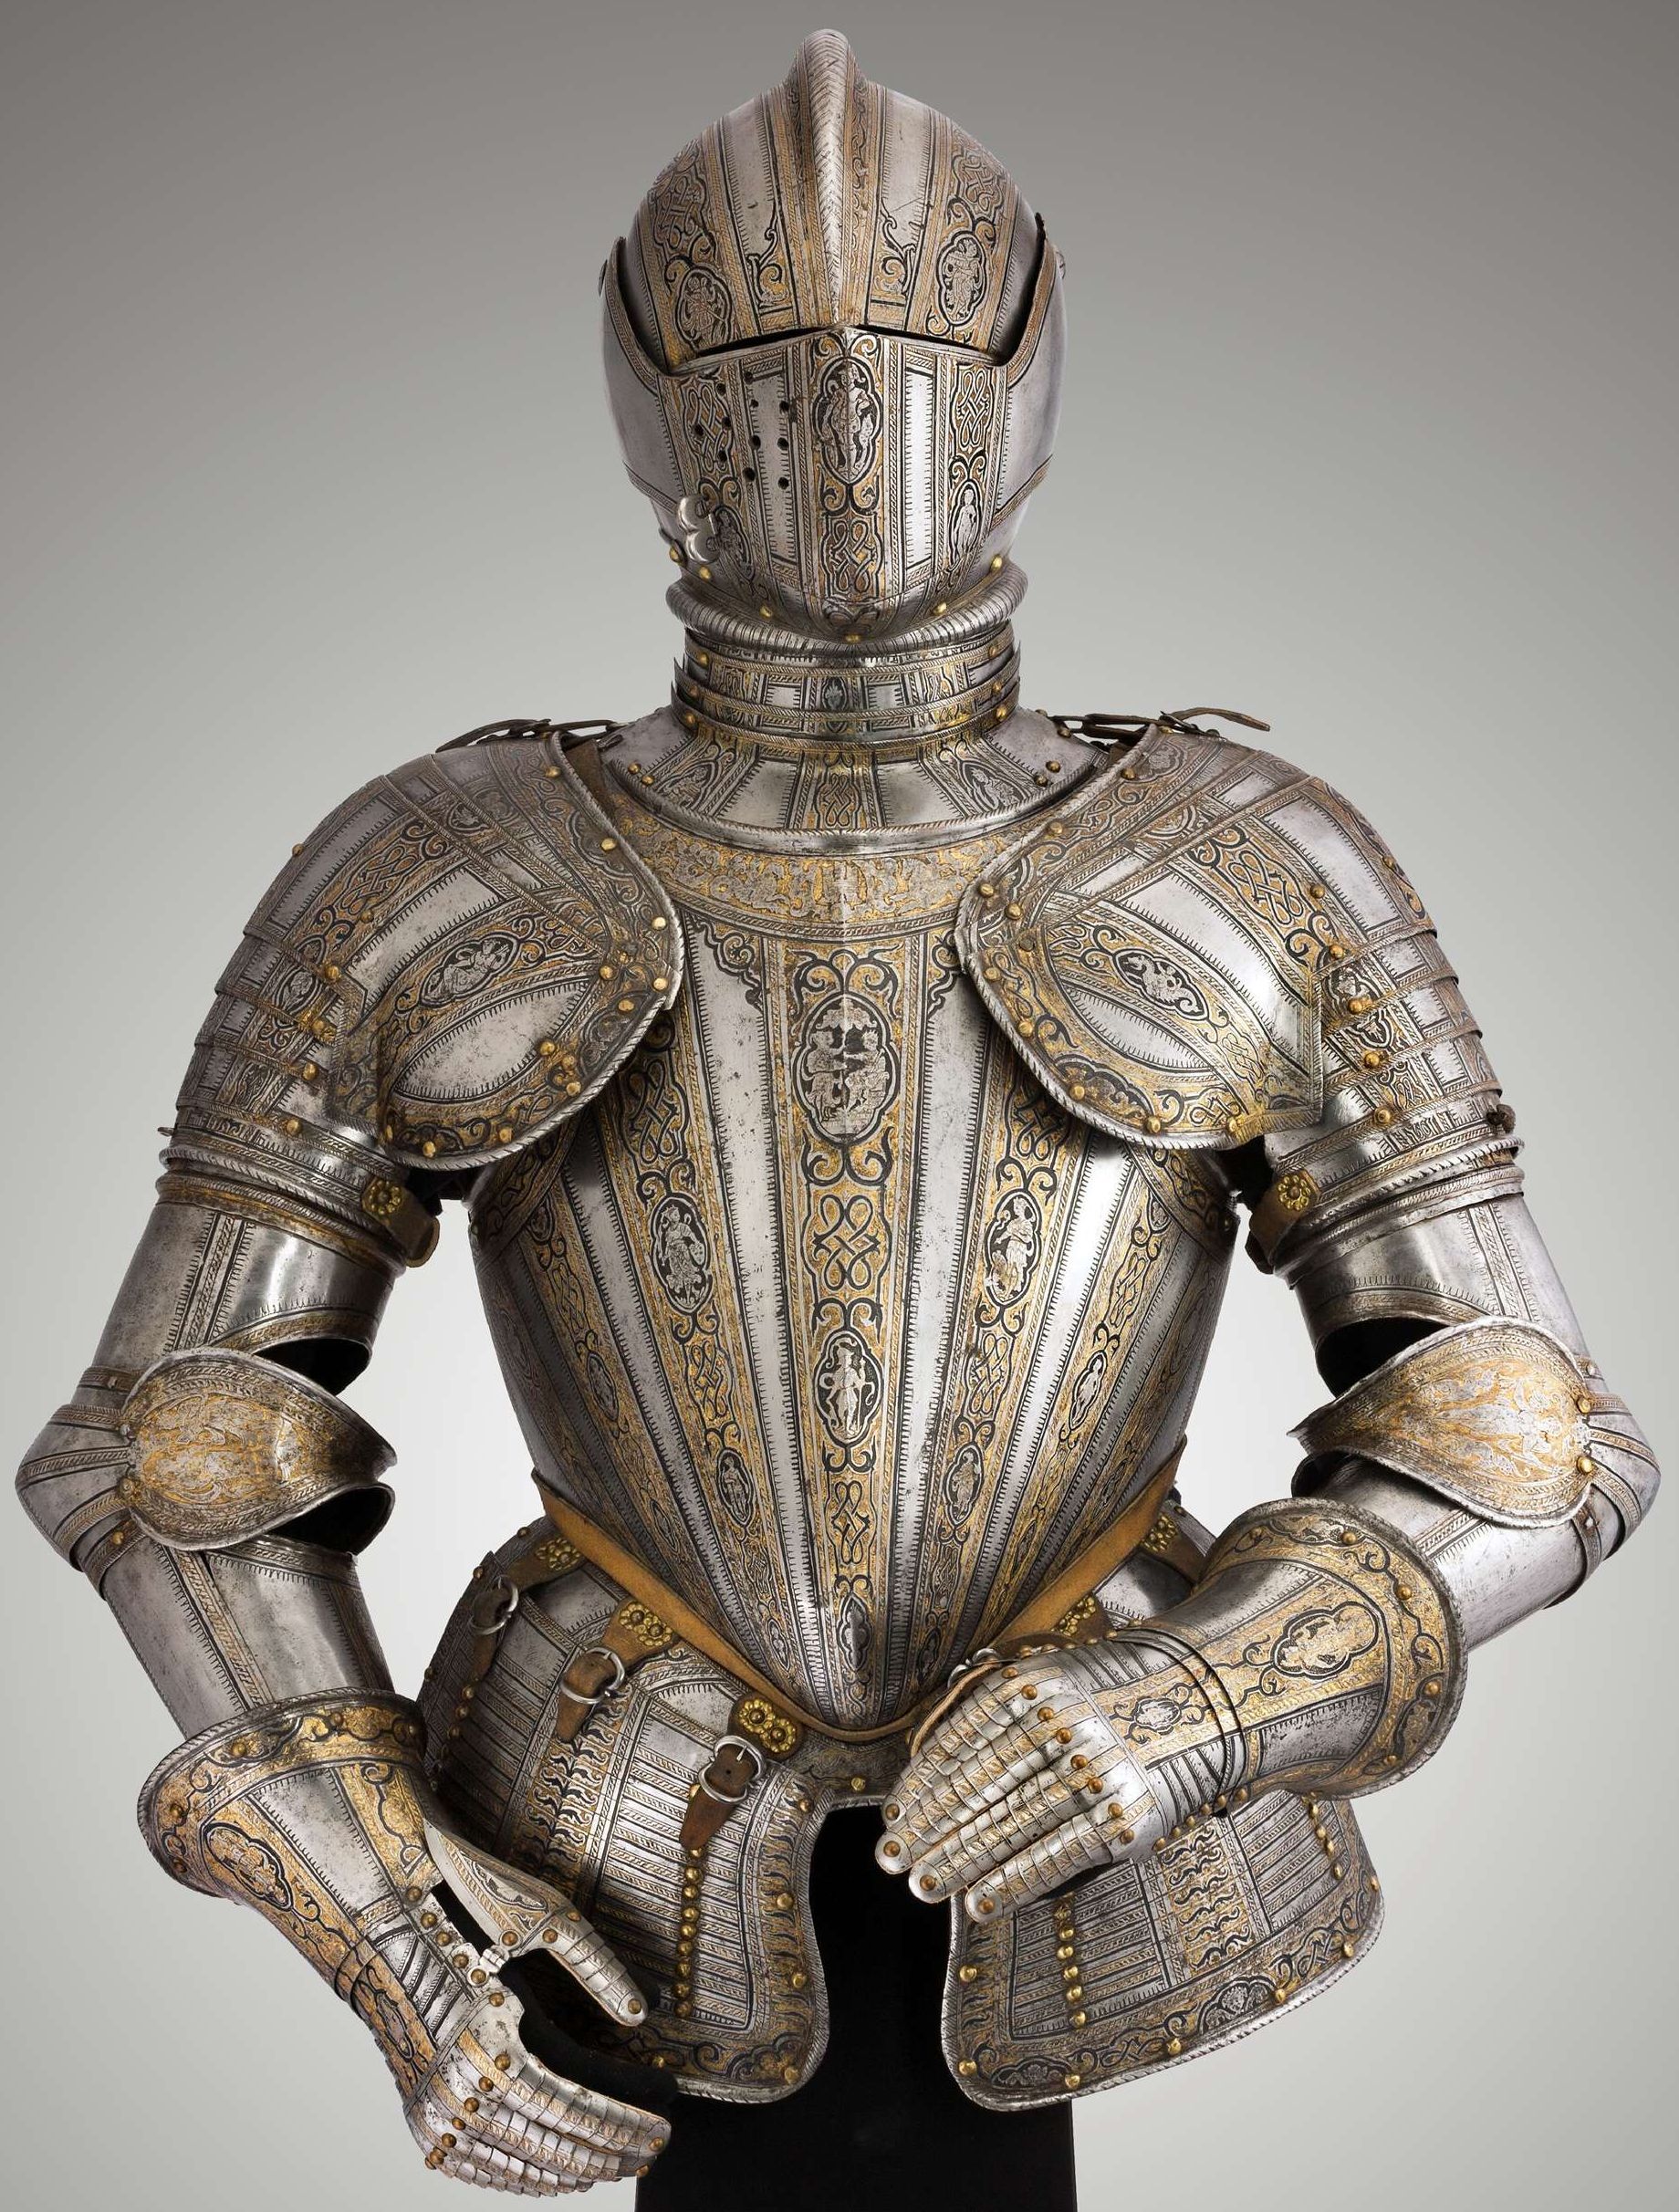 General 1840x2424 armor knight armet cuirass gauntlets european engraving gold engravings medieval portrait display museum